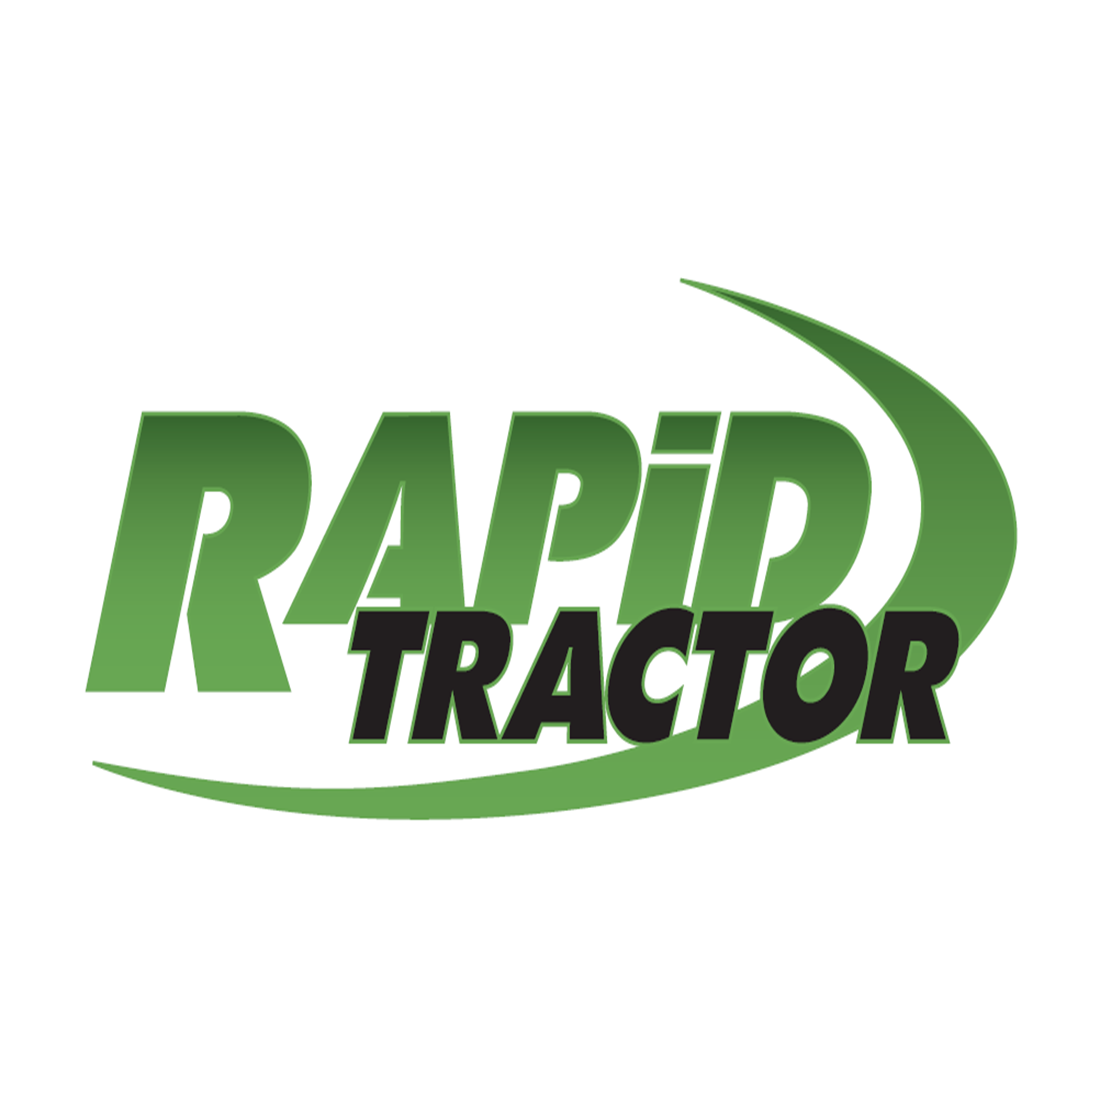 Dimsport Rapid for tractors